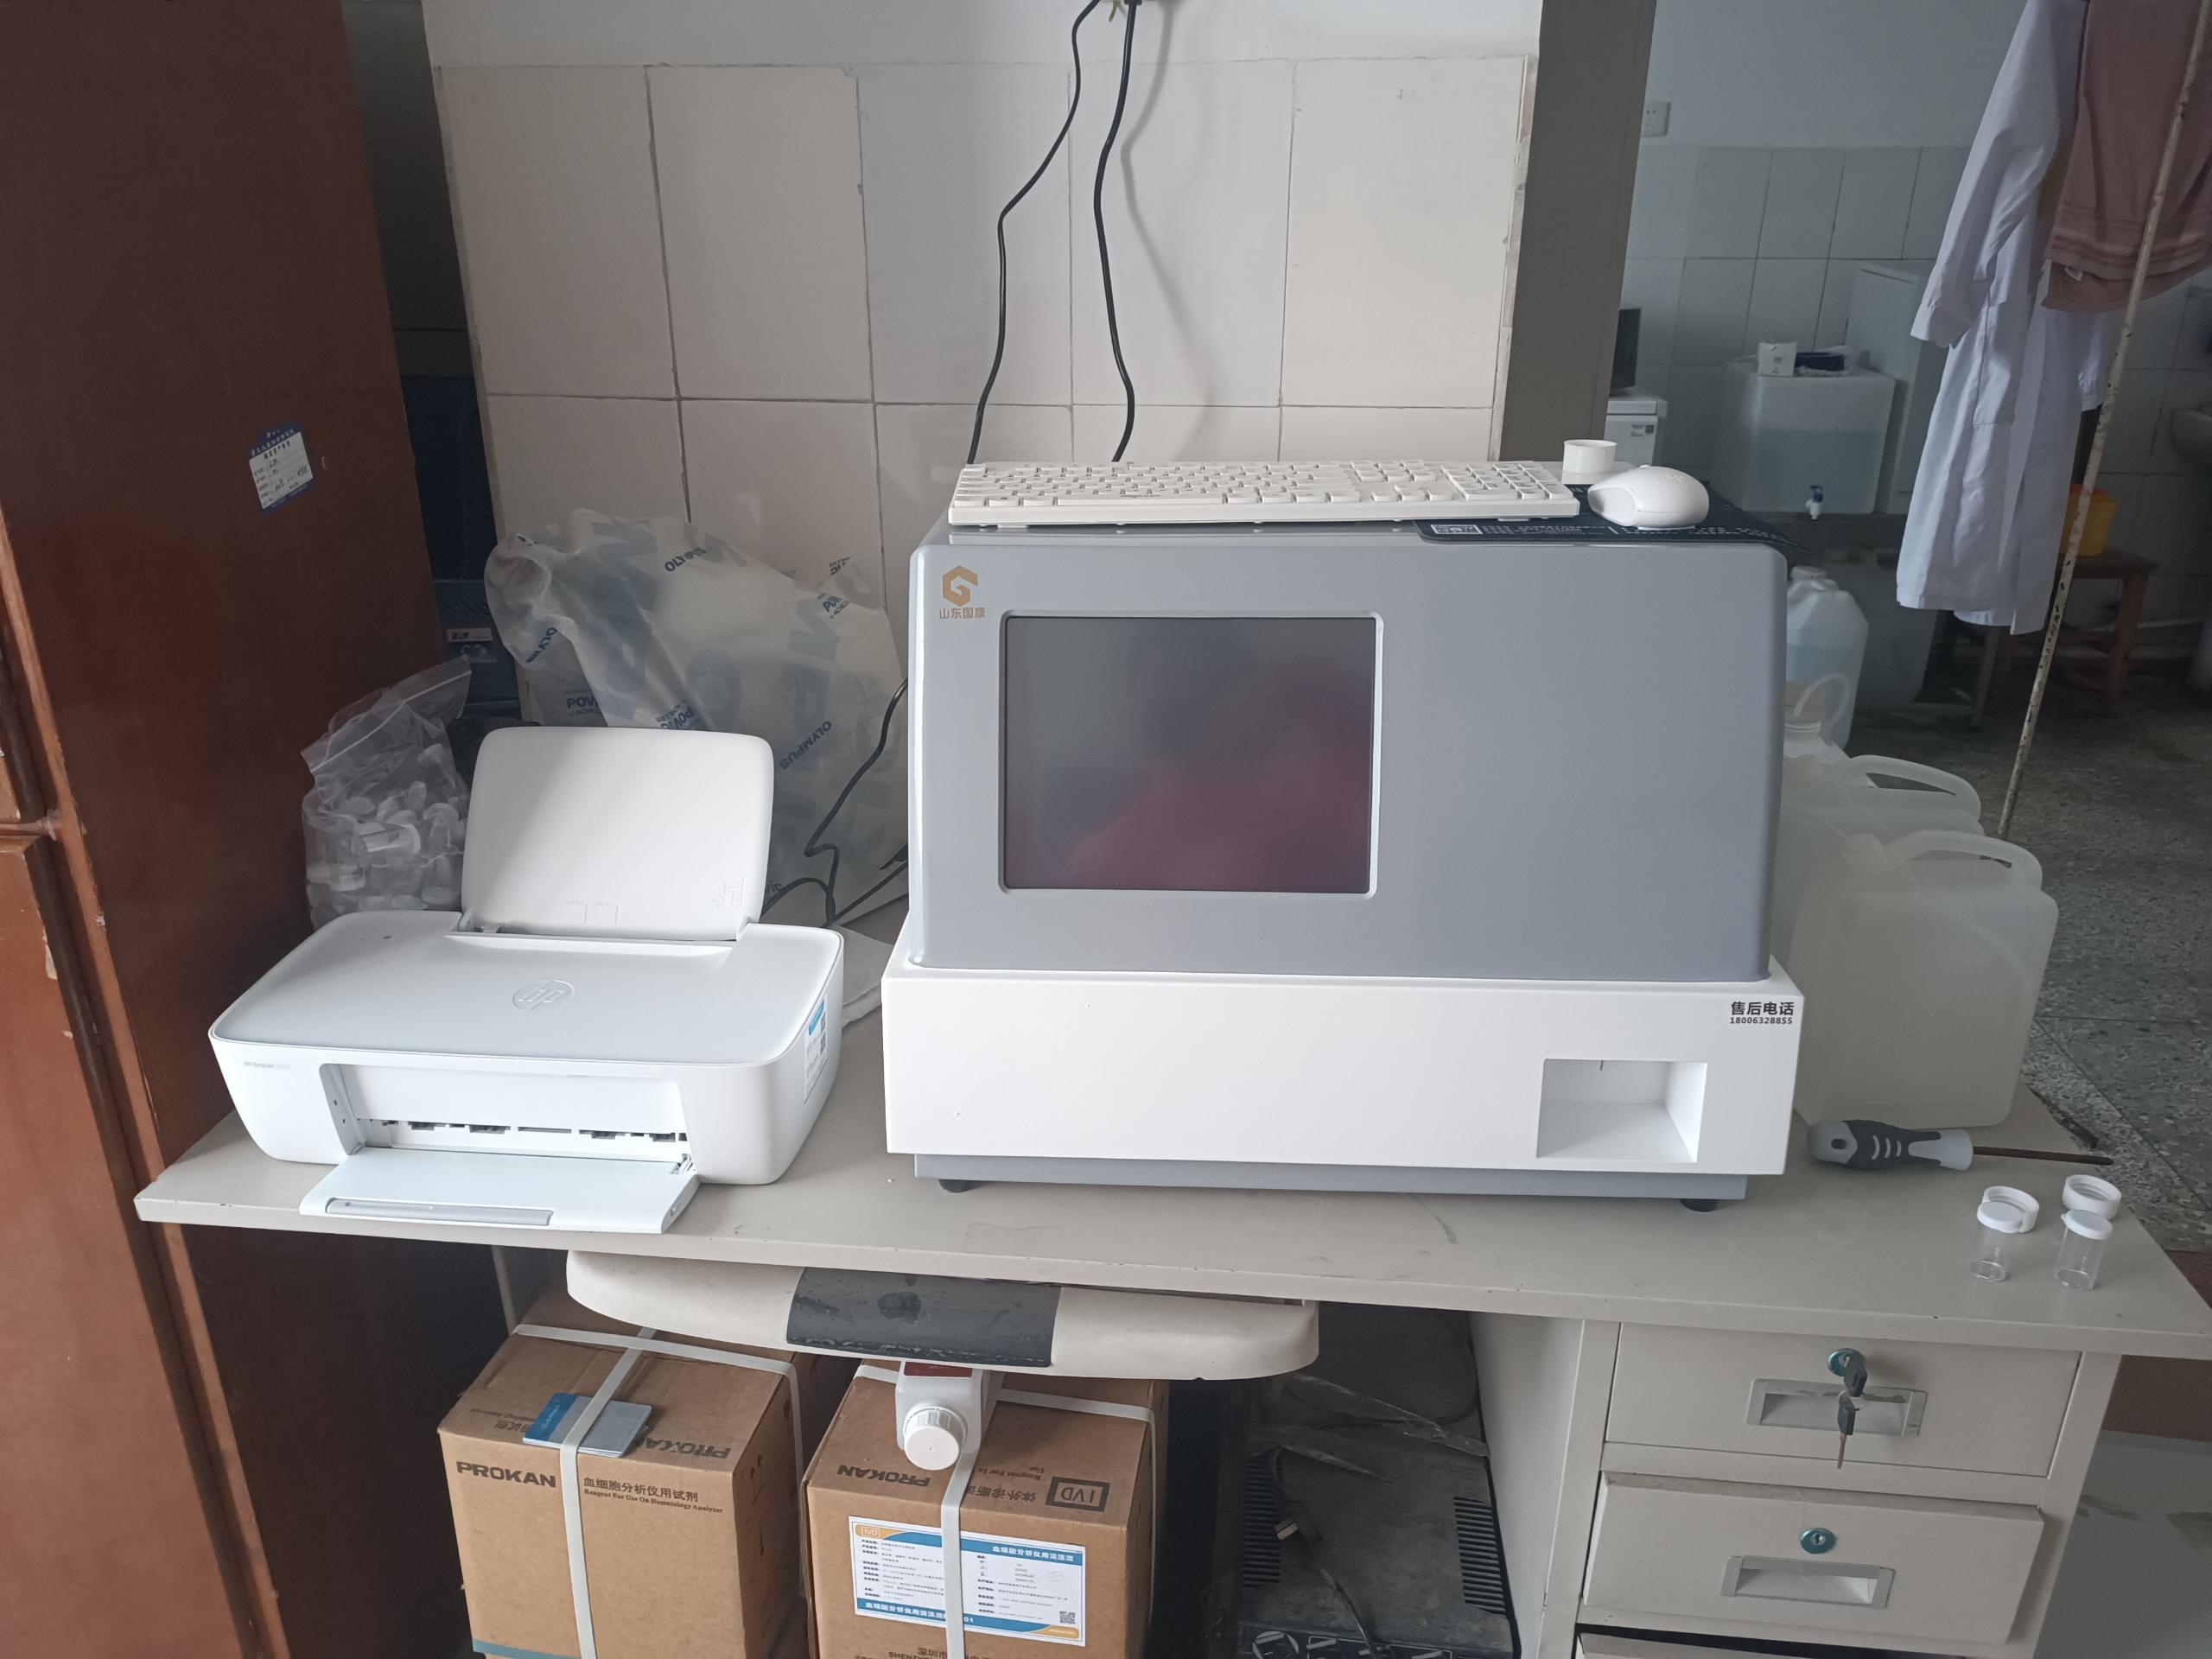 GK-9000母乳分析仪器在河北元氏县妇幼保健院完成装机和培训指导